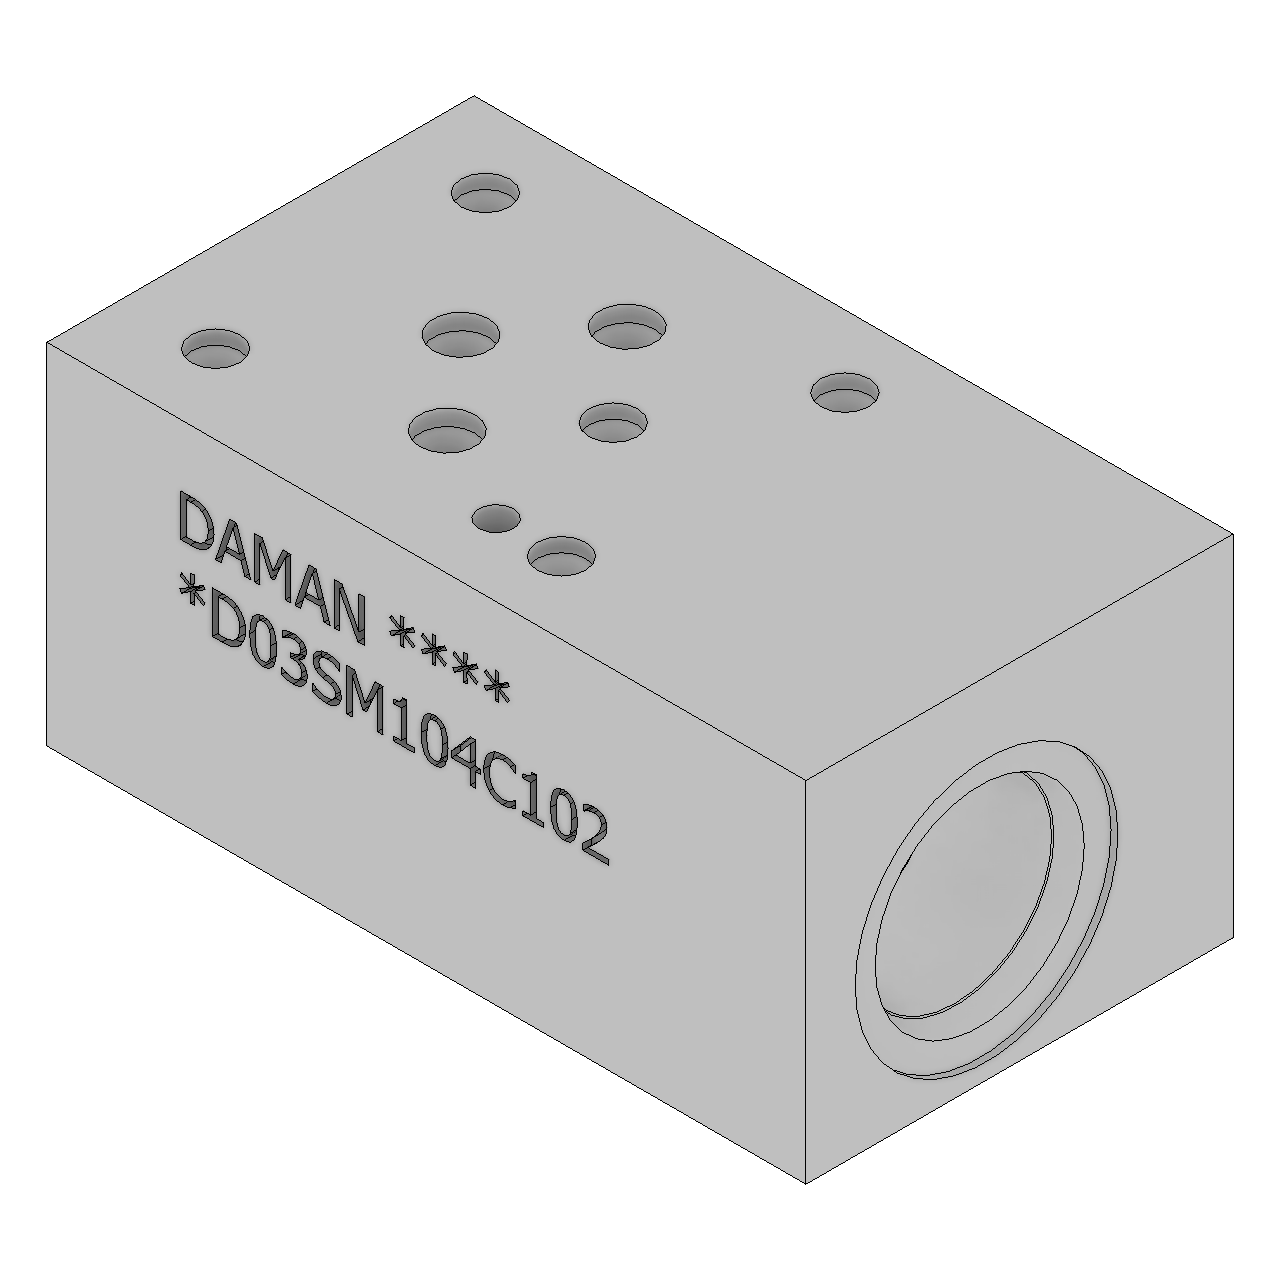 DD03SM104C102 - Sandwich Modules